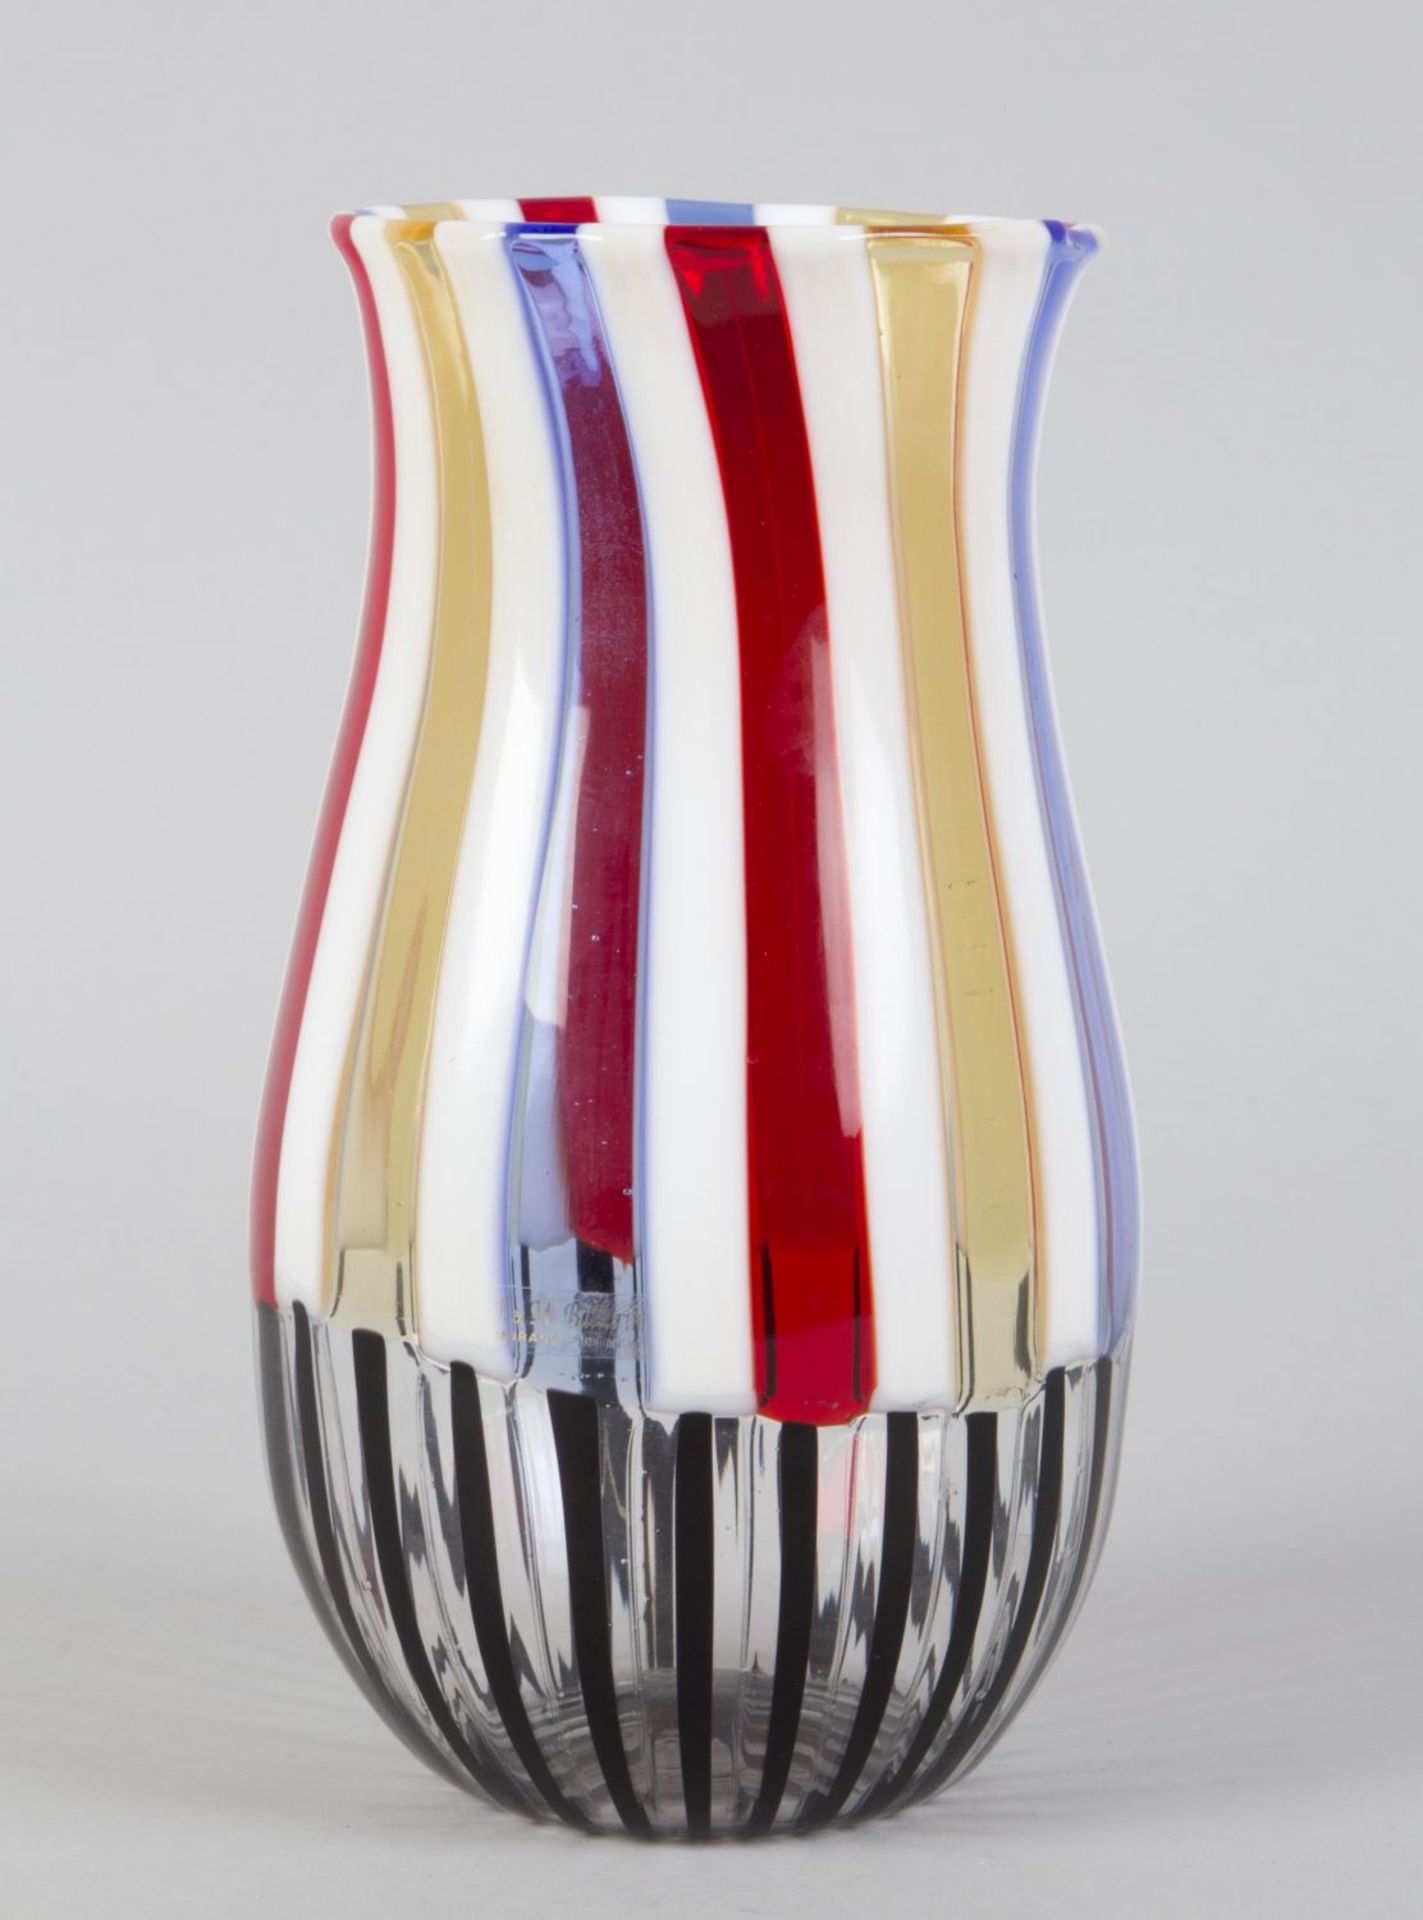 Murano-Vase Farbloses Glas. Eingeschmolzene Längsstreifen in Weiß, Gelb, Rot und Blau sowie Schwarz.